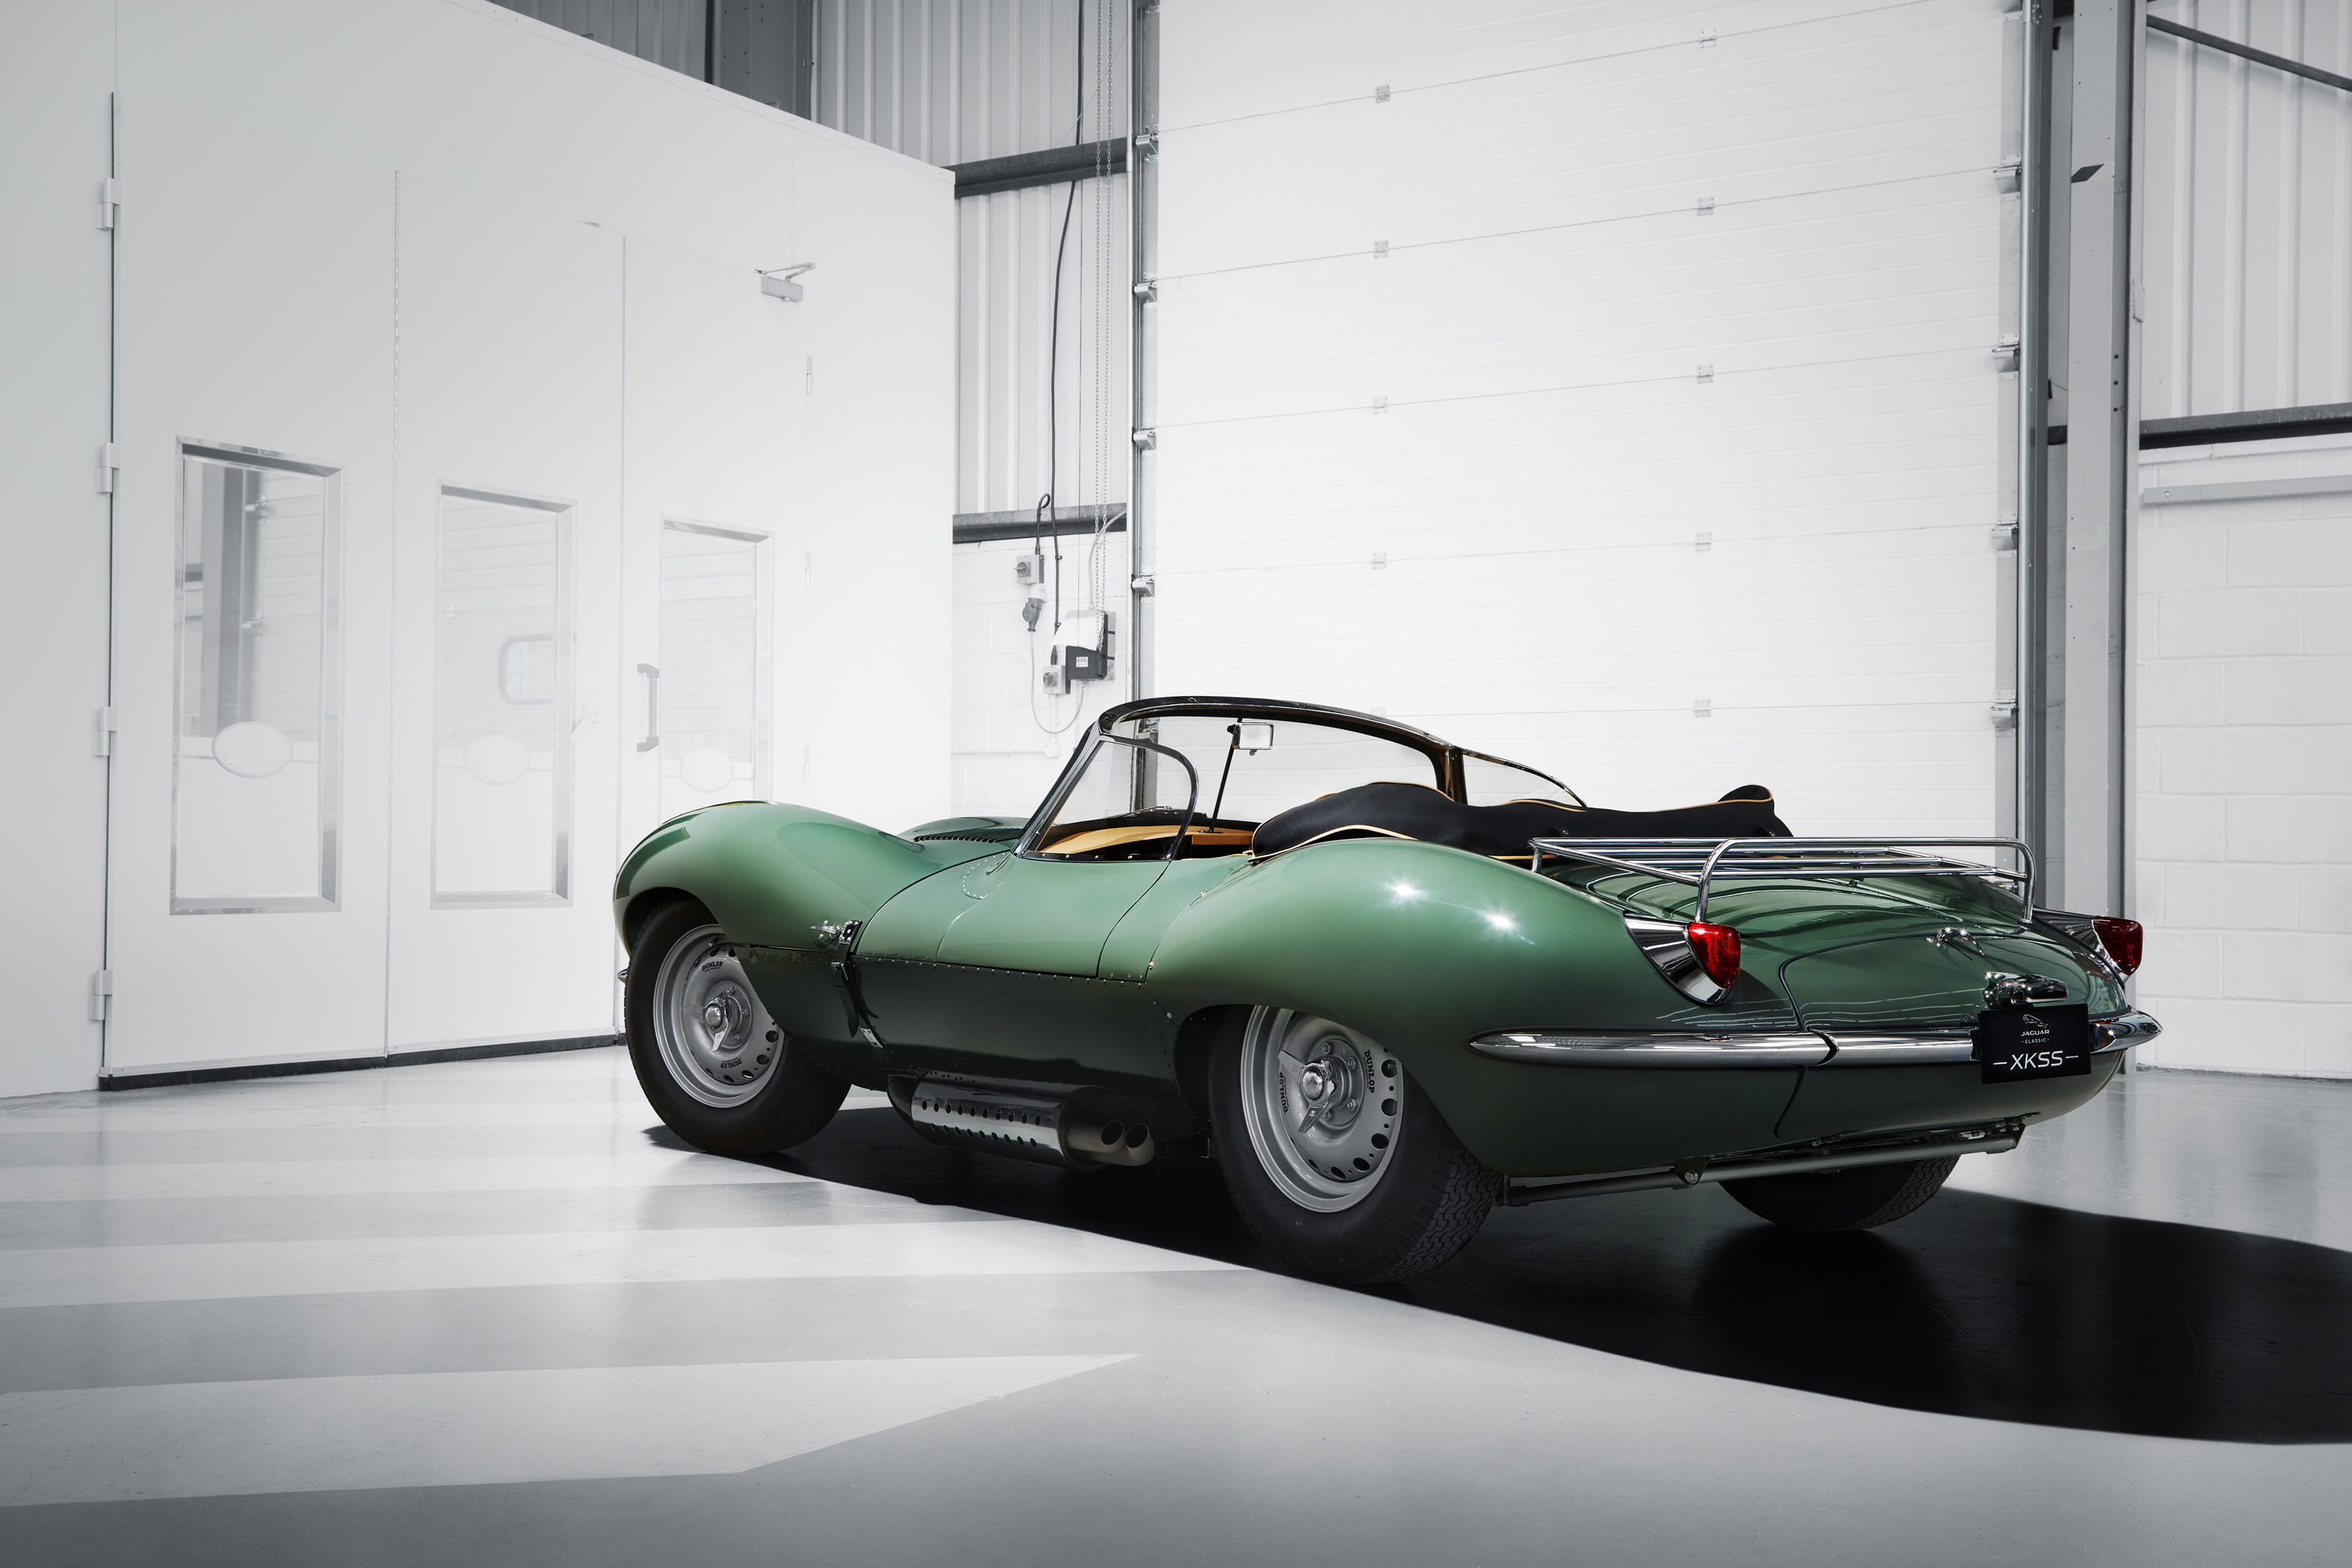 Jaguar XKSS, определенно, был невероятным автомобилем в то время, когда он был представлен -шестьдесят лет назад. Но этого не достаточно для всей команды Jaguar: они решили возродить старую классику и создать девять эксклюзивных автомобилей, которые 